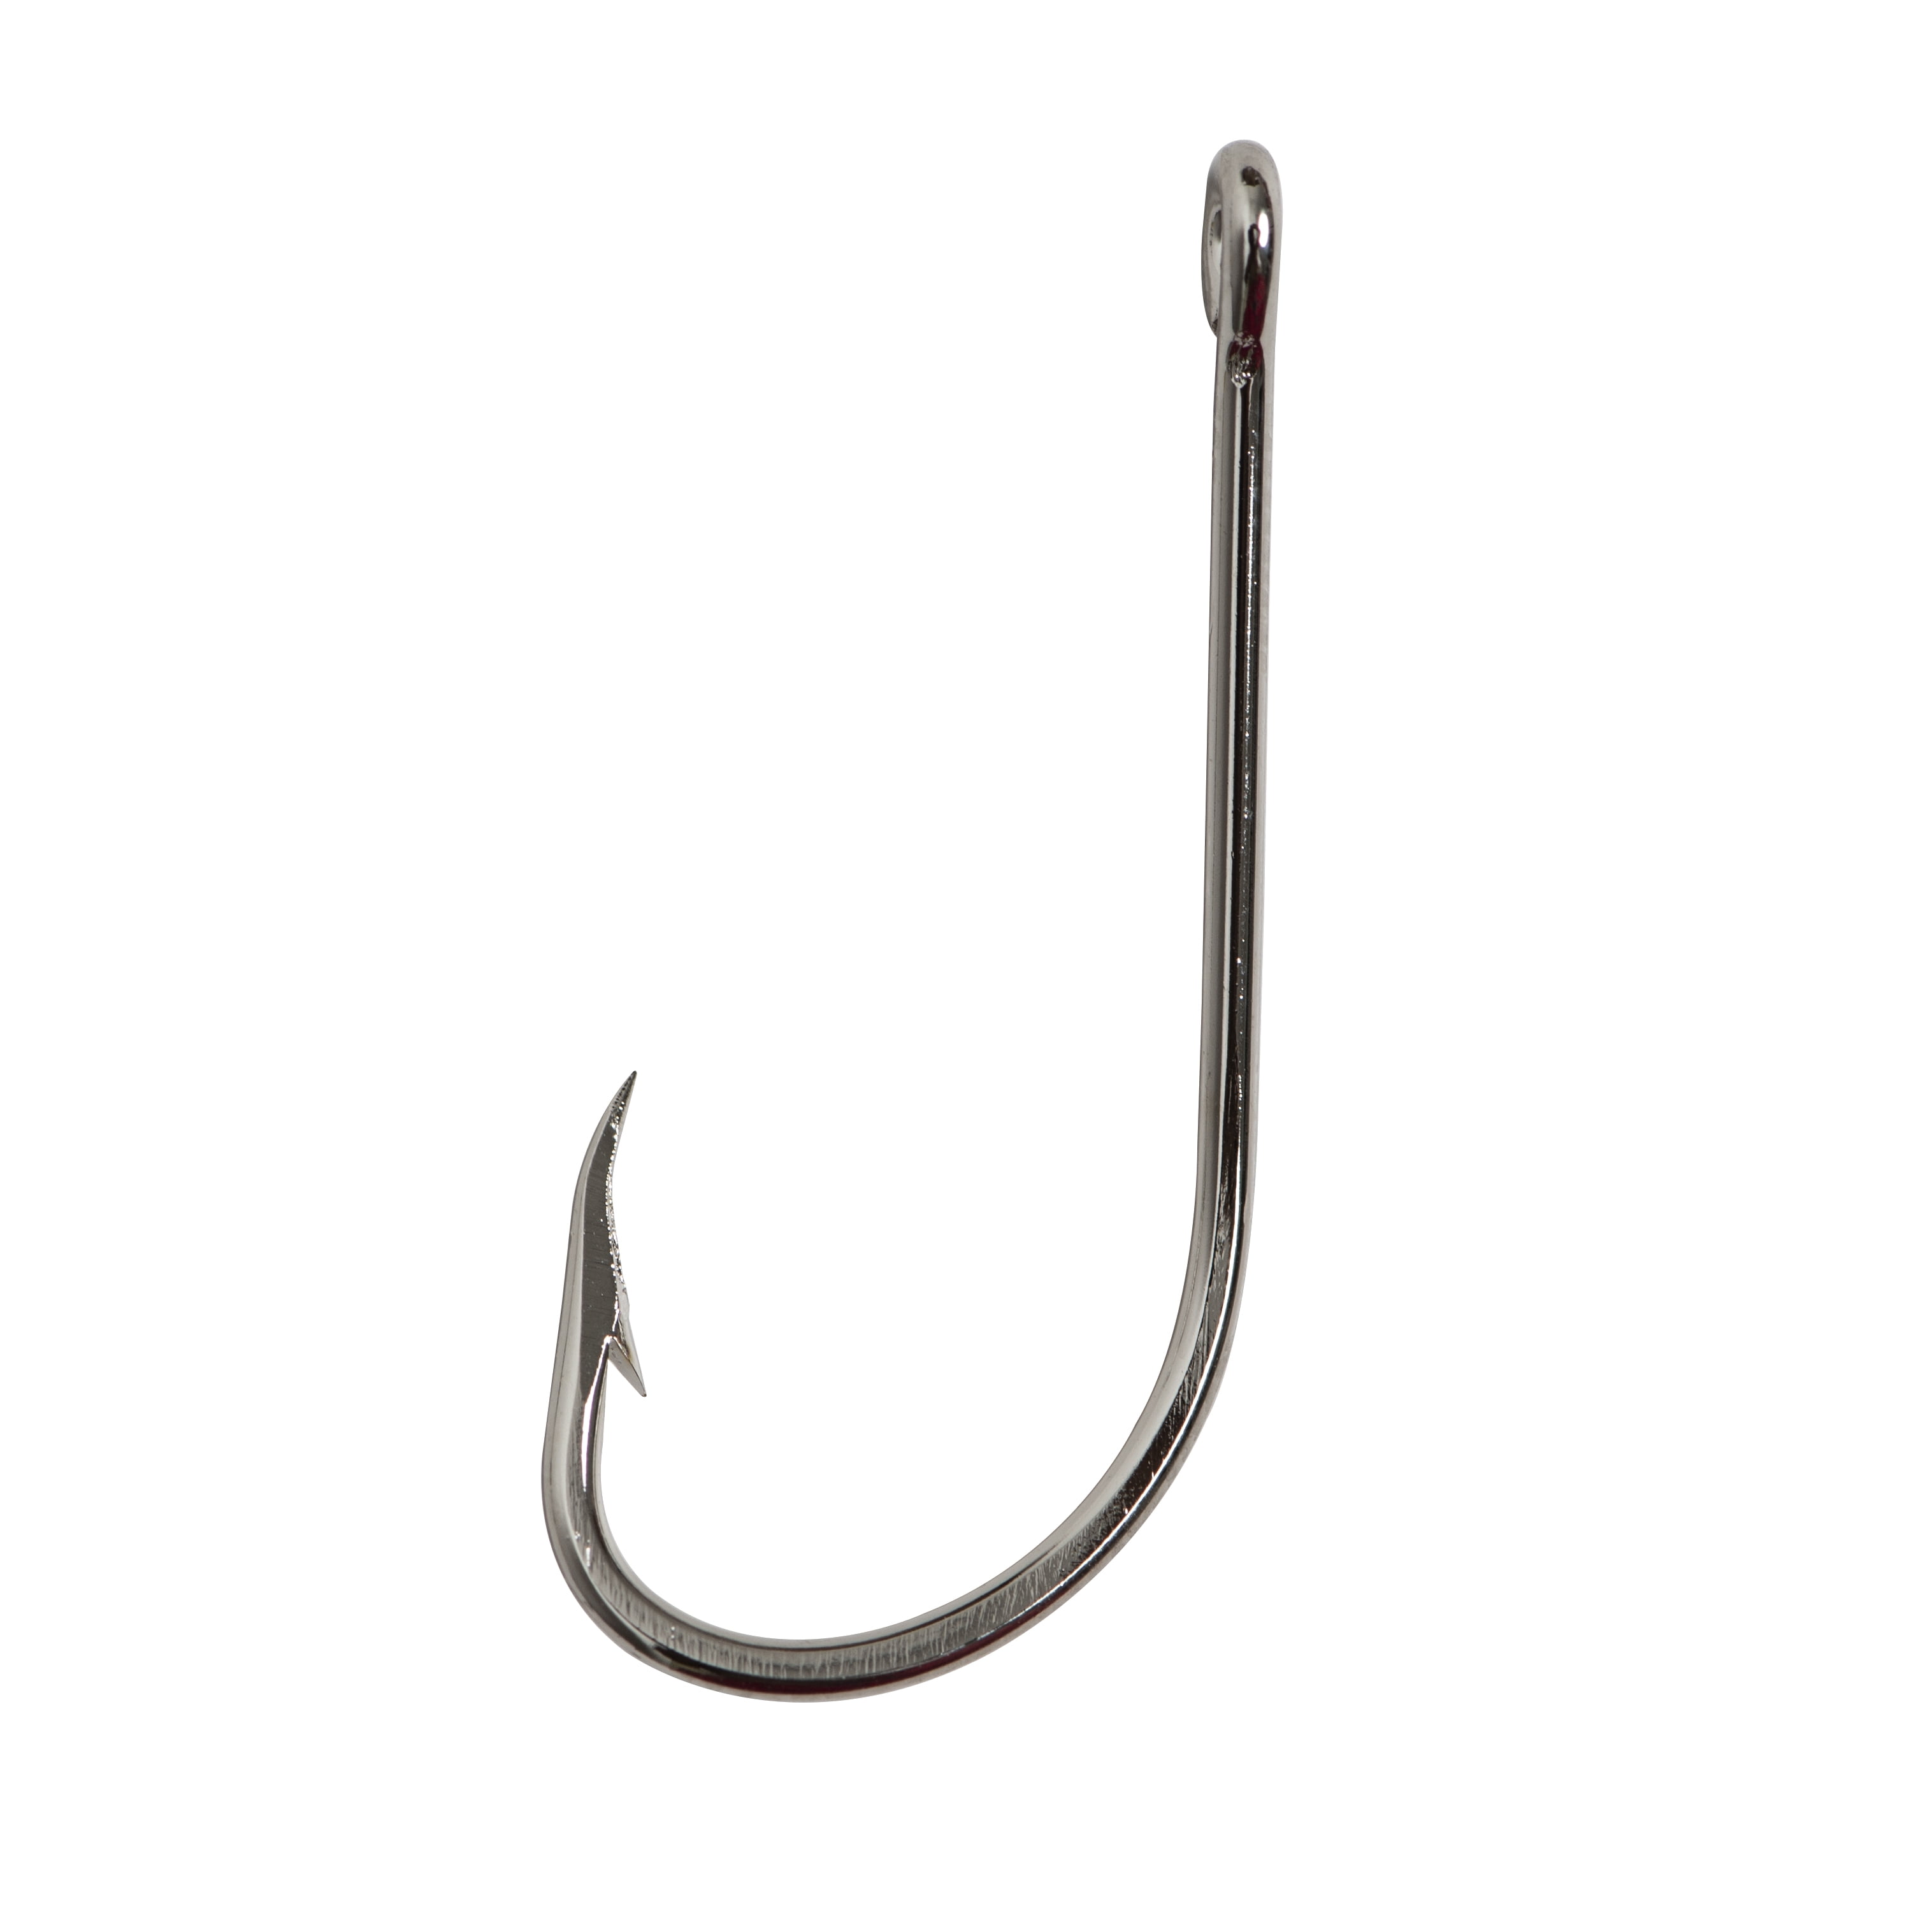 Mustad Baitholder Hook (Nickel) - Size: 3/0 40pc 